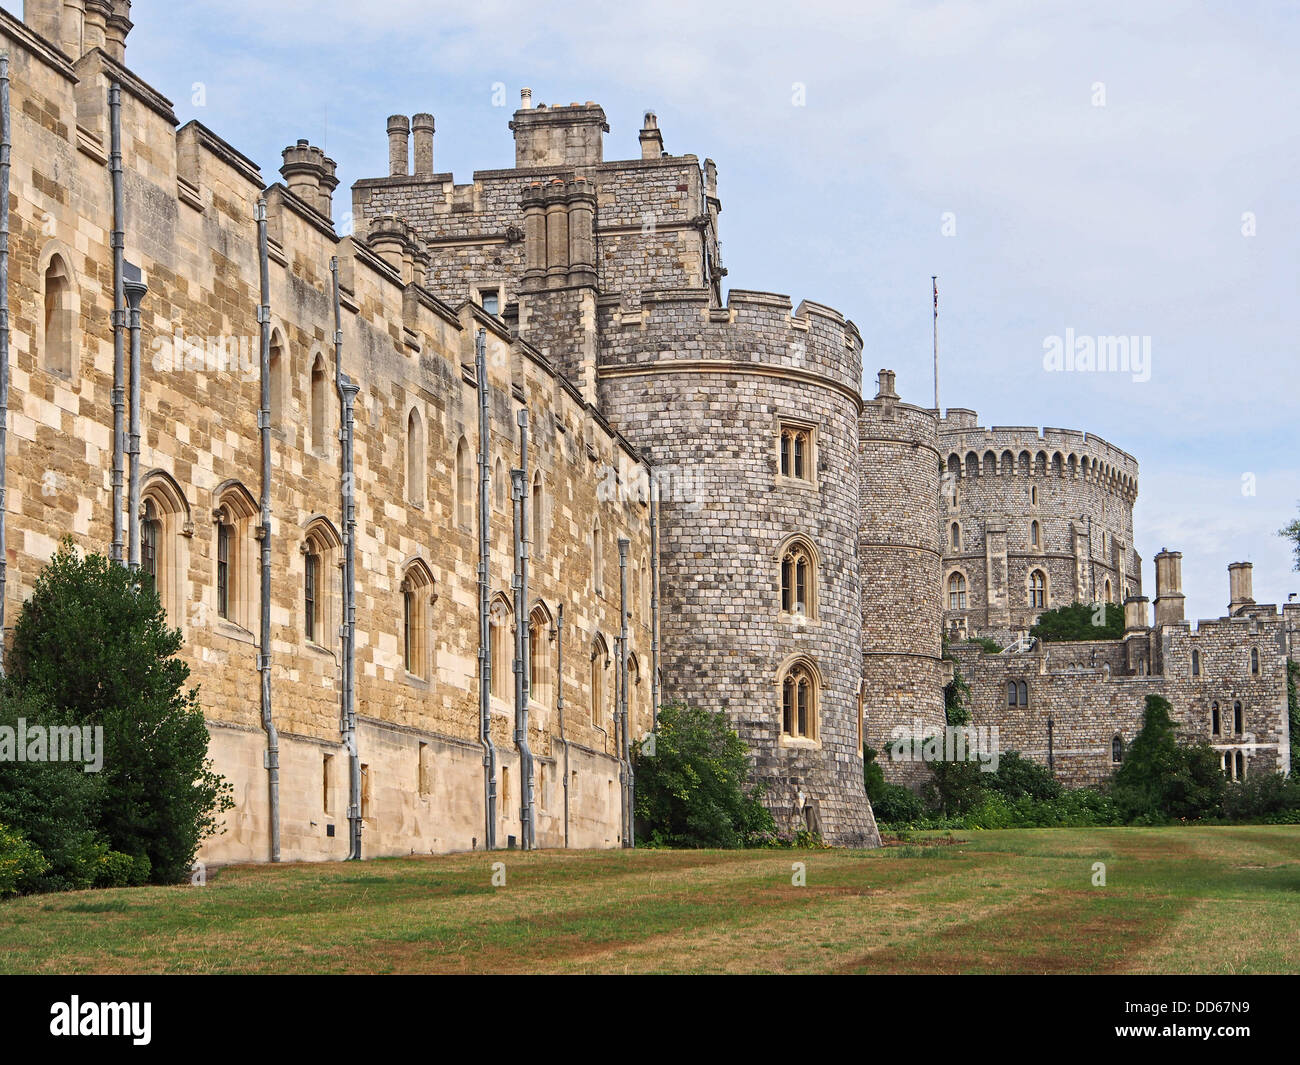 Le Château de Windsor, au sud-ouest de mur extérieur, avec tour ronde en arrière-plan Banque D'Images